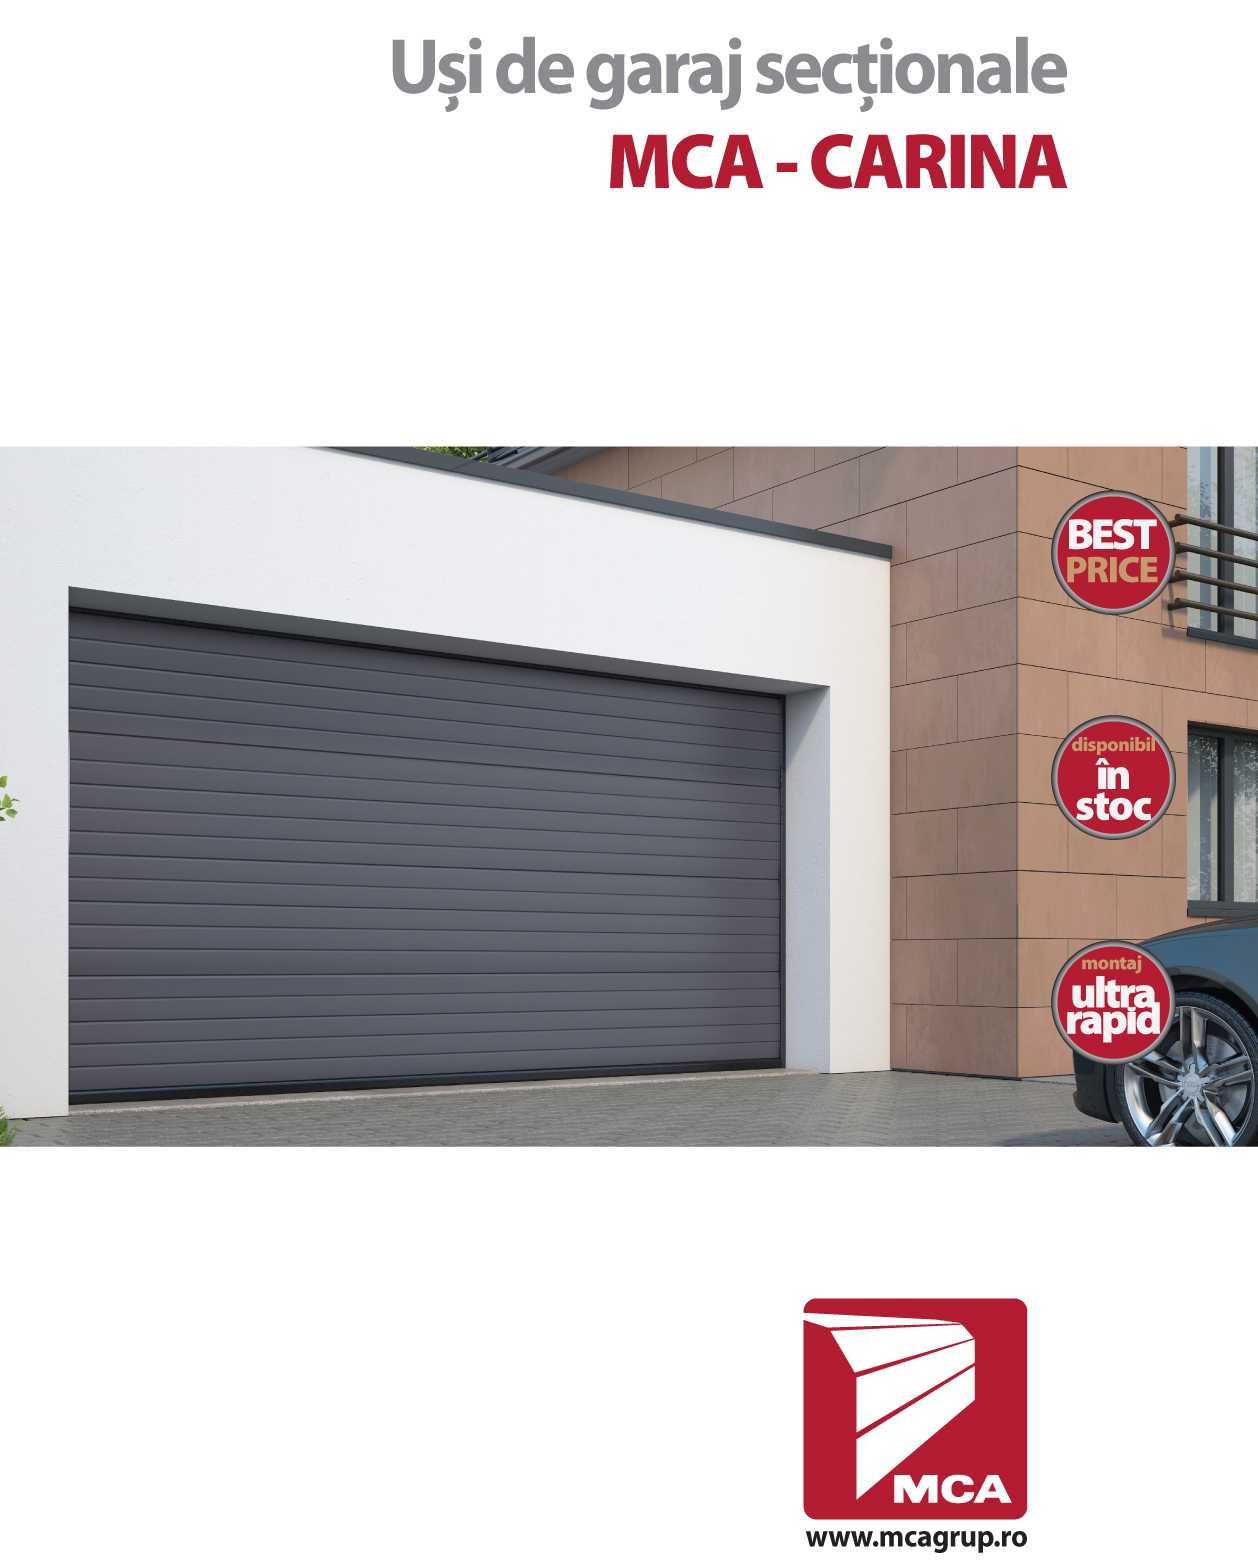 Usa de garaj MCA, actionata din telecomanda, 3000x2000 mm (LxH)